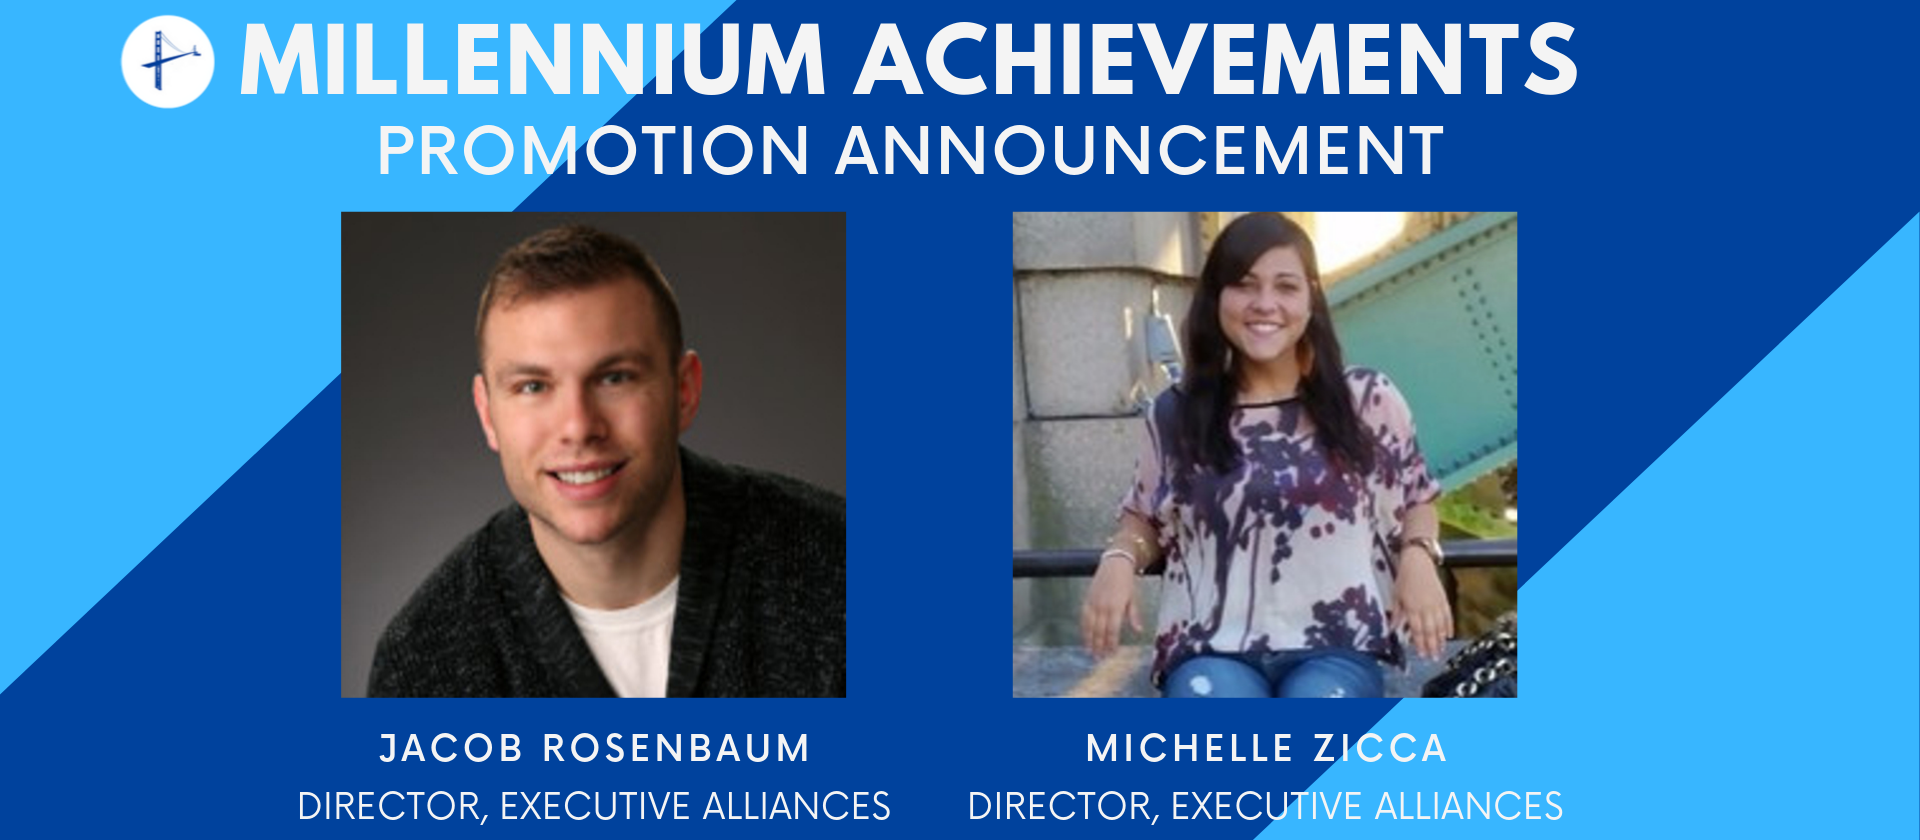 Millennium Alliance Achievements Promotion Announcement